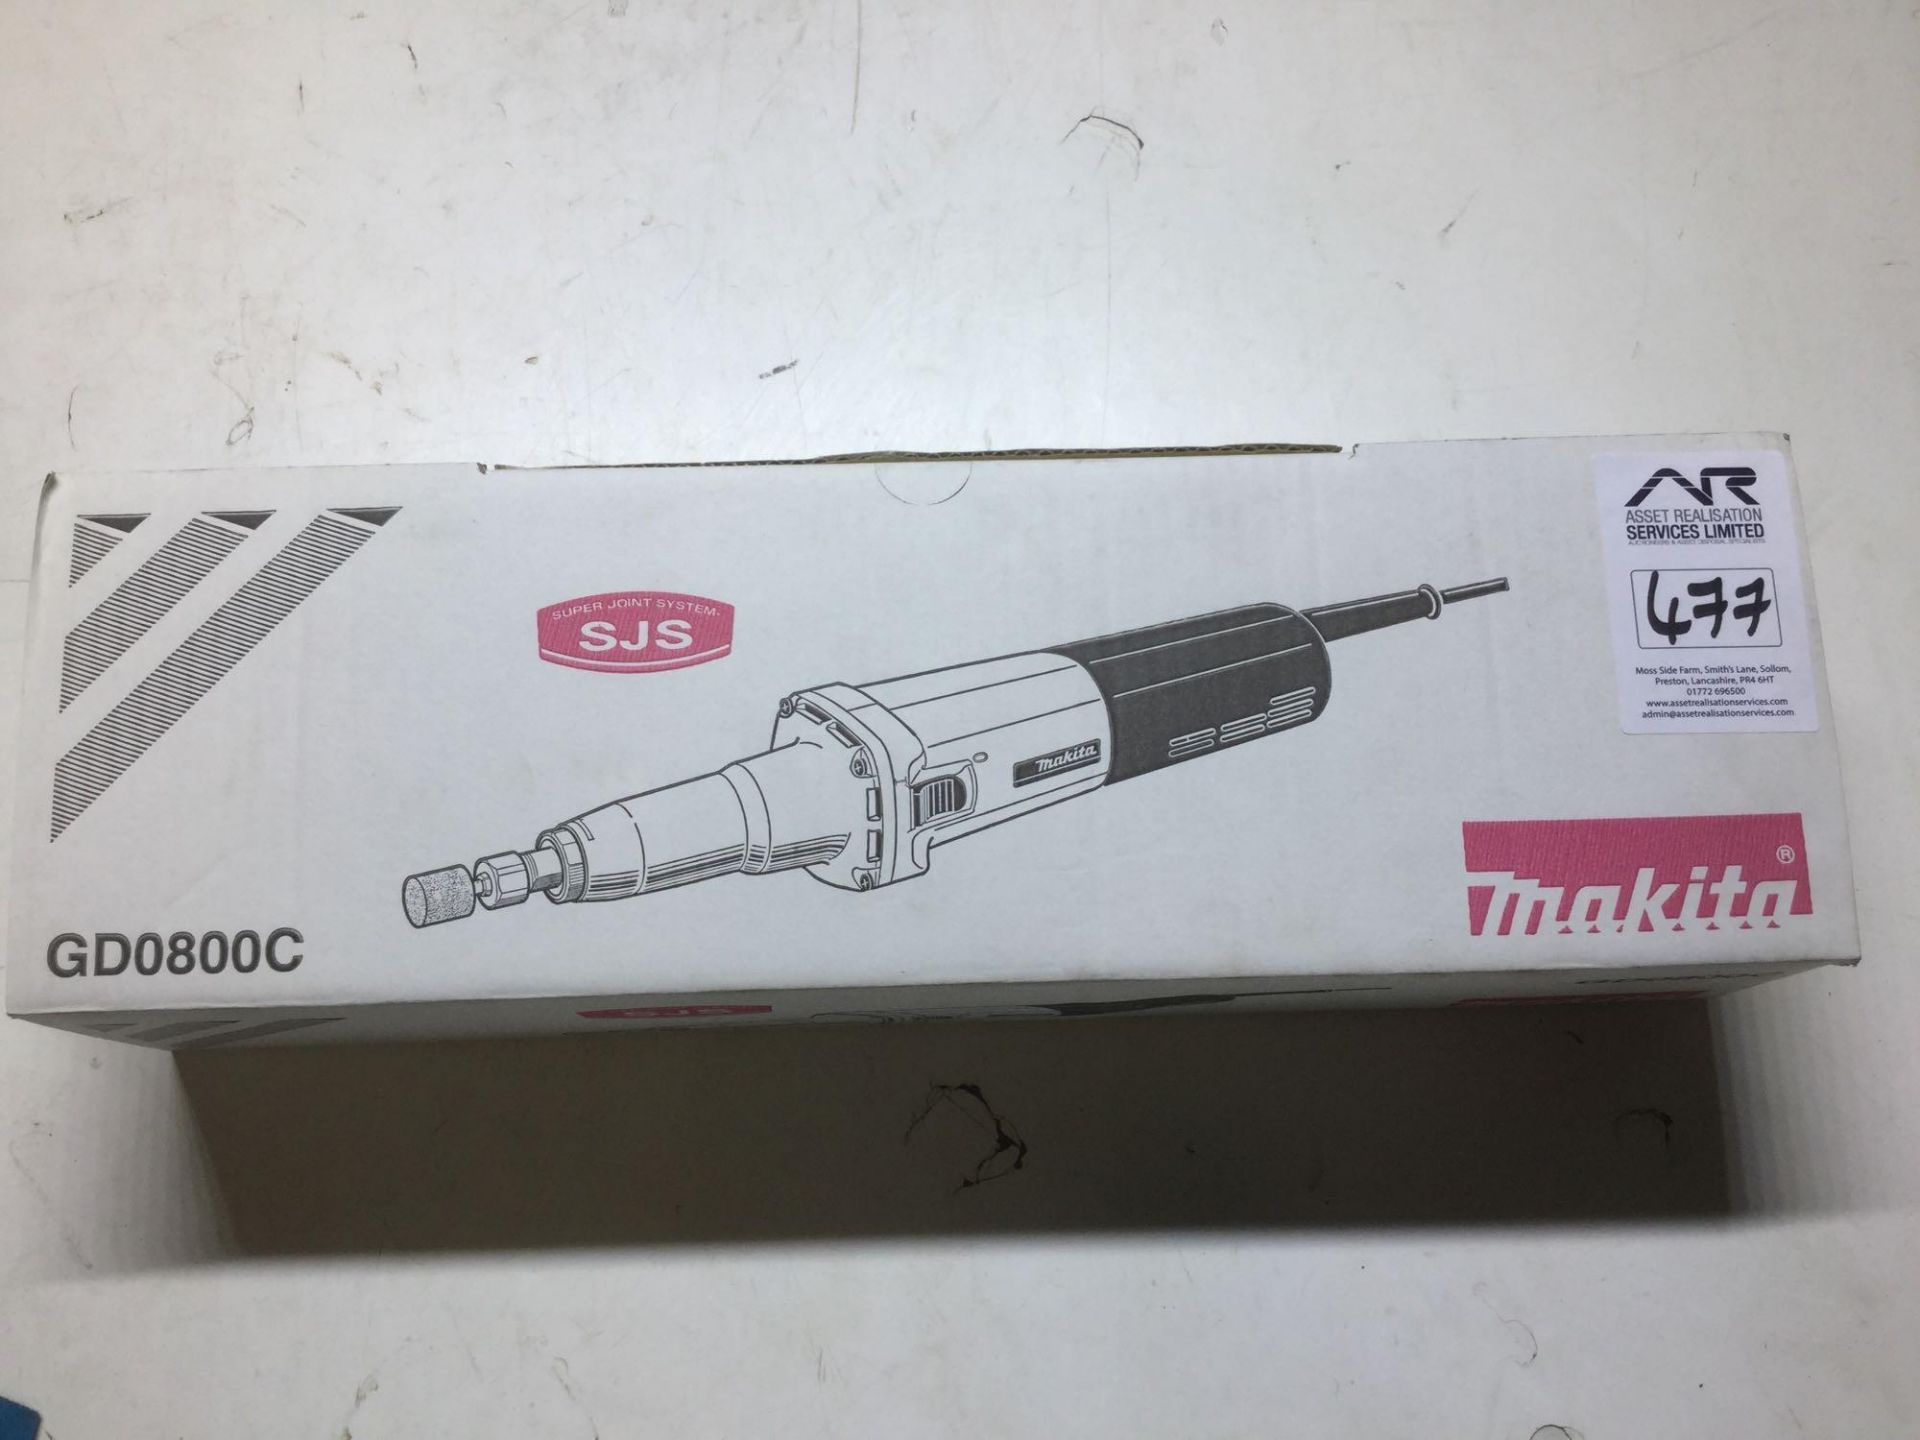 Makita die grinder model GD0800C brand new in box - Image 5 of 5